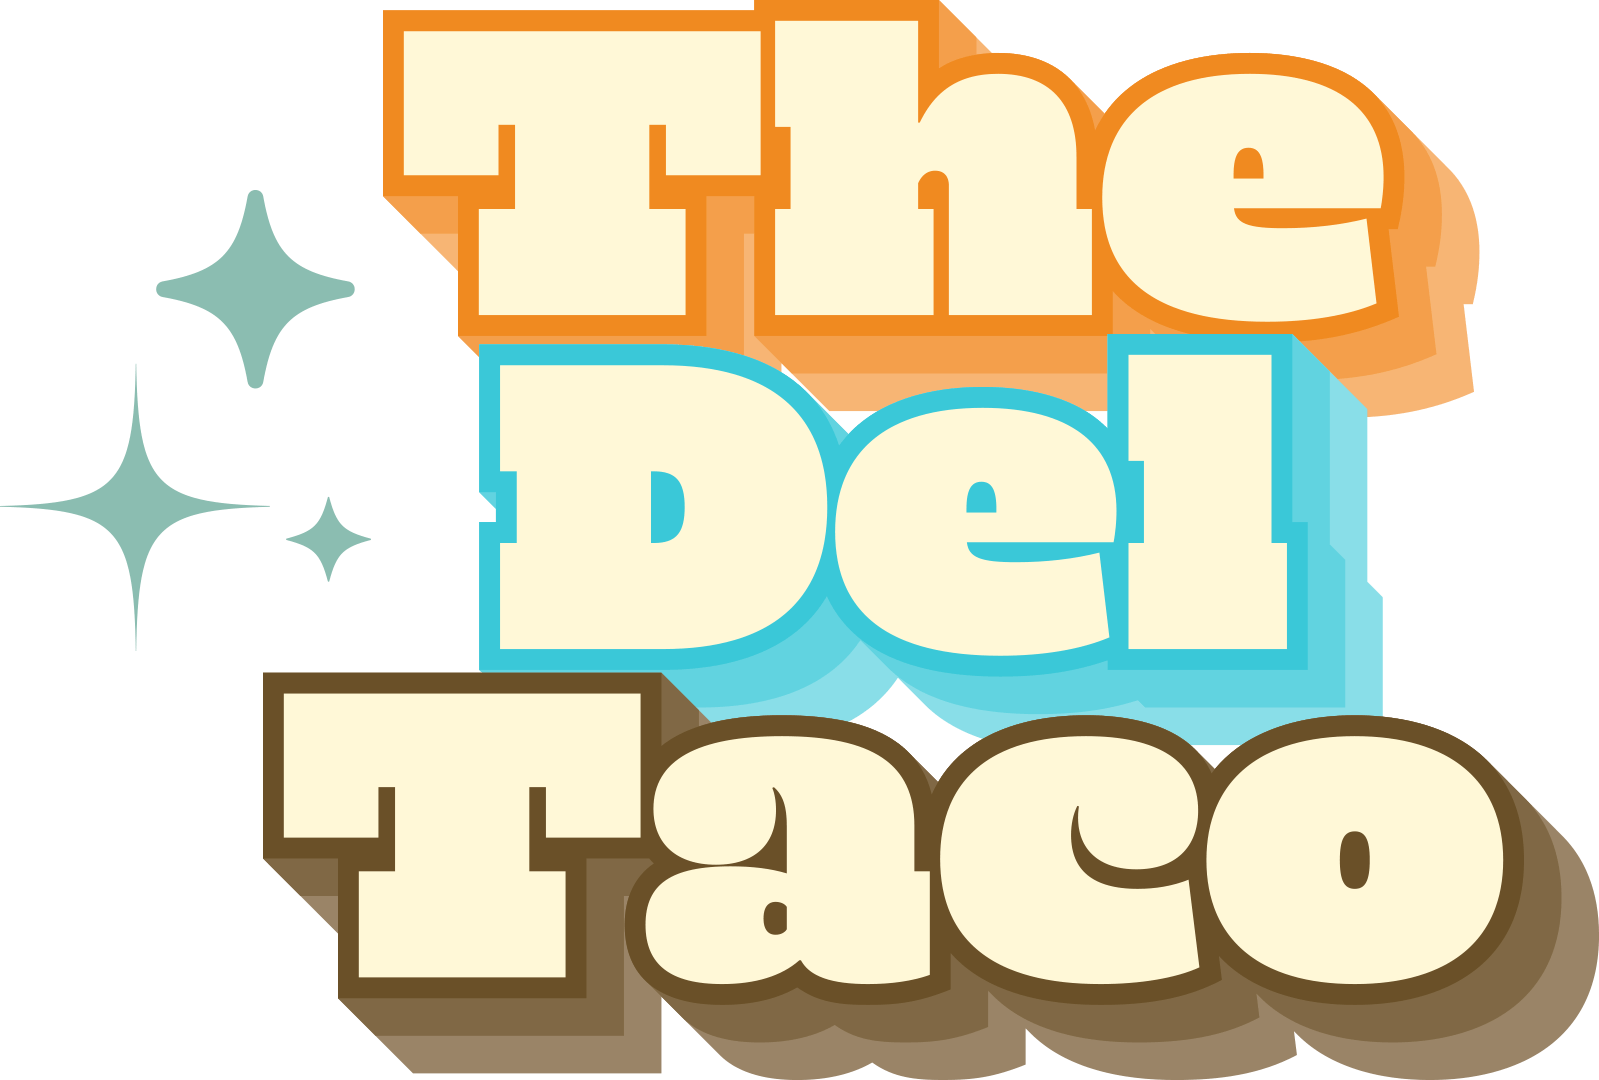 The Del Taco